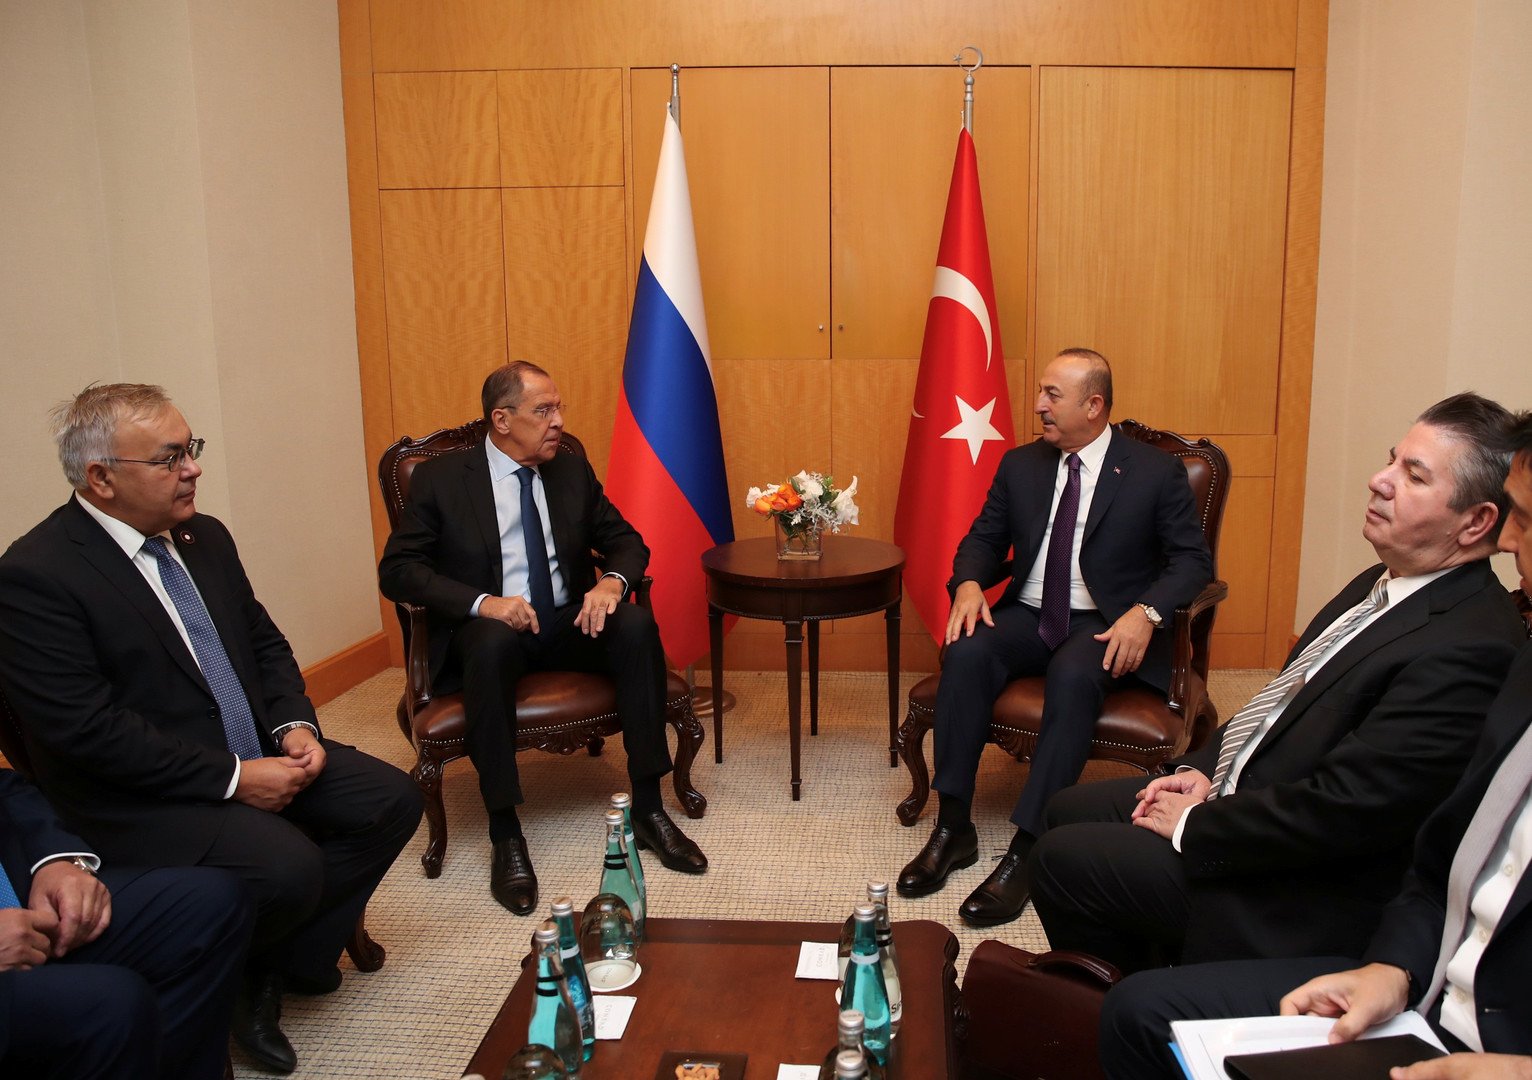 وسط التصعيد التركي شرق المتوسط.. روسيا ترفض أي خطوات تعرقل الحل في قبرص